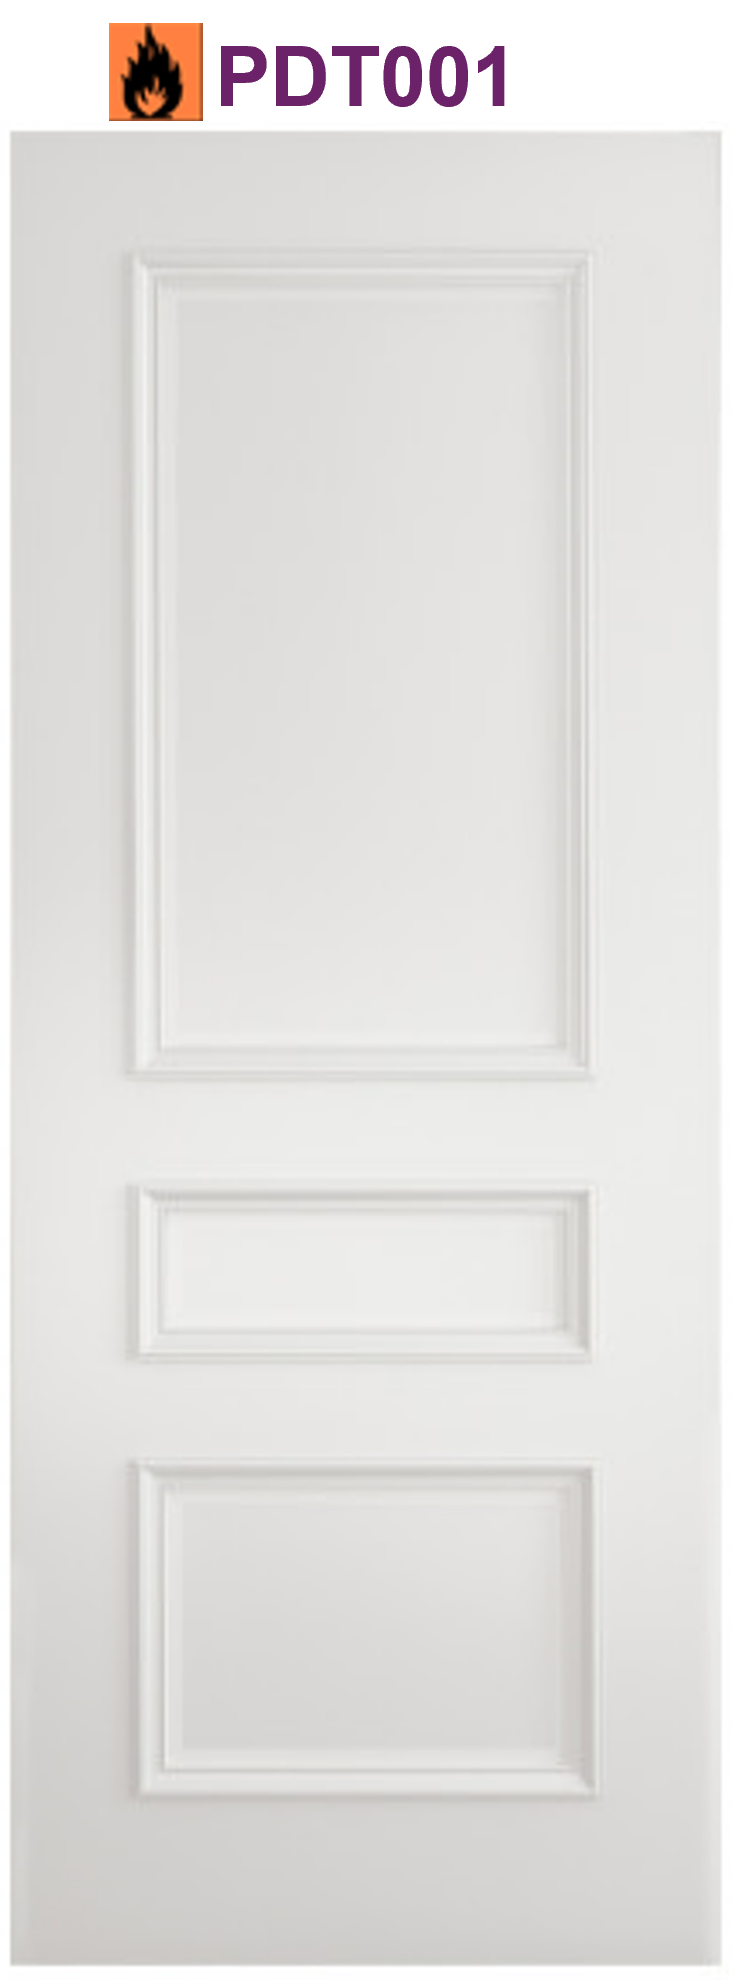 windsor white primed internal door manchester